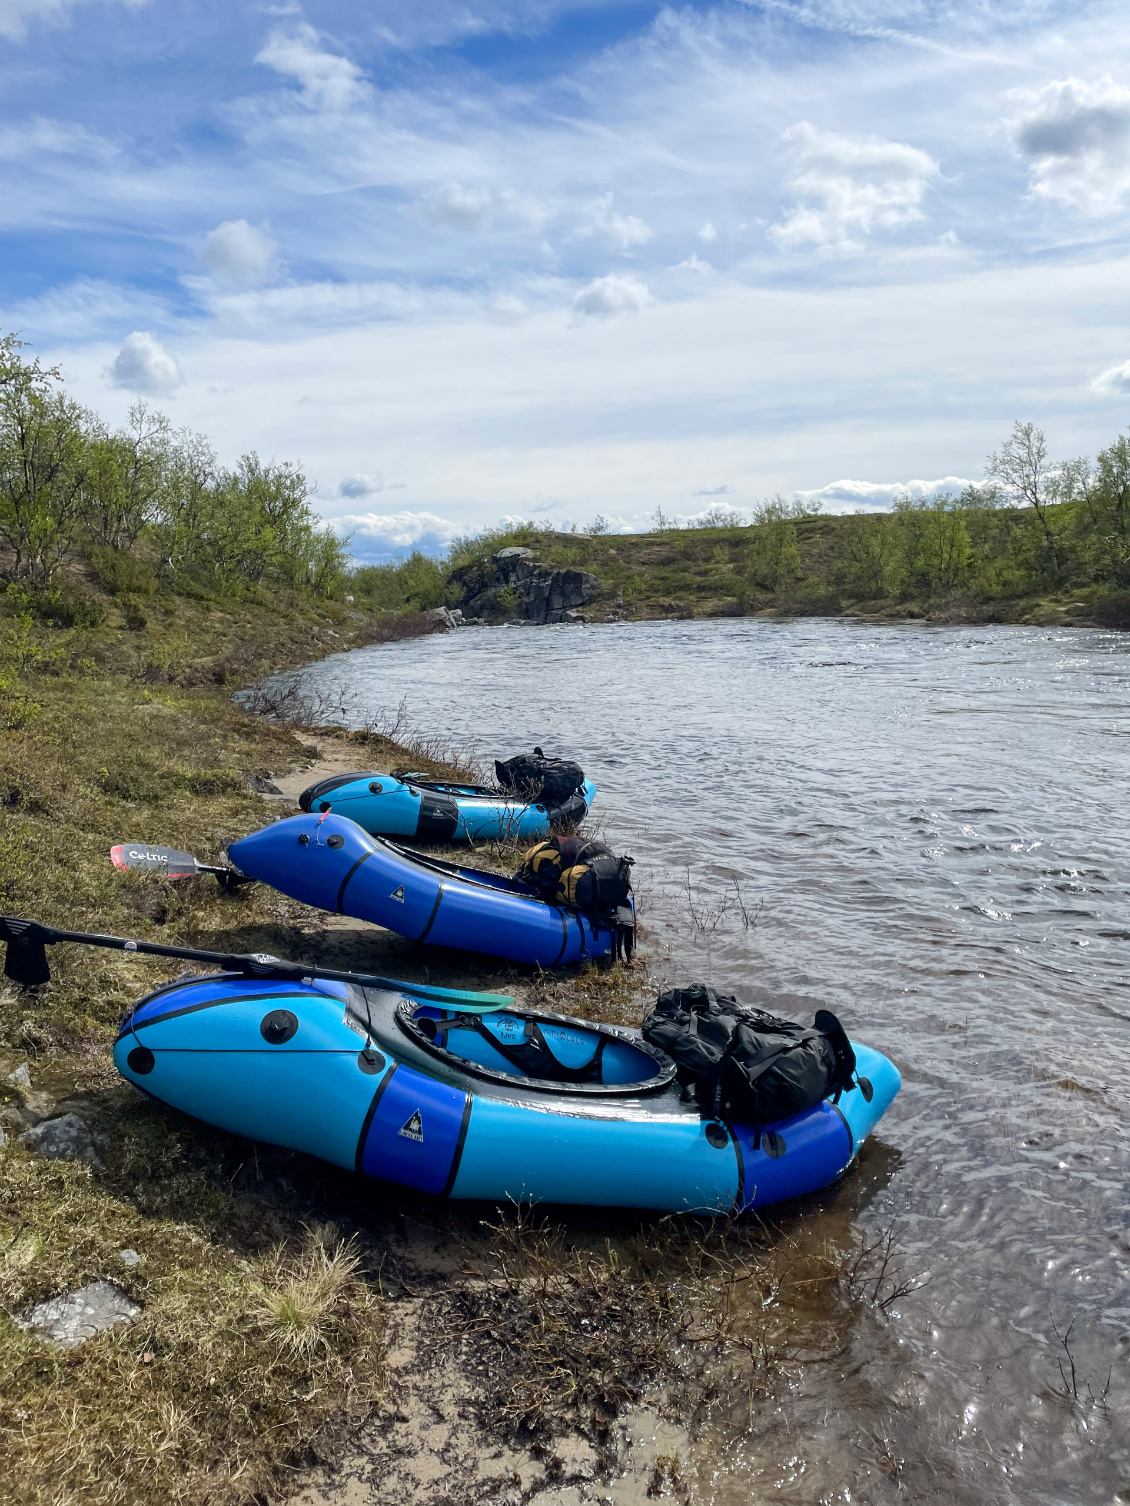 Rando-packraft sur les rivières sauvages de Laponie suédoise.
Photo : Sylvain Rebillard